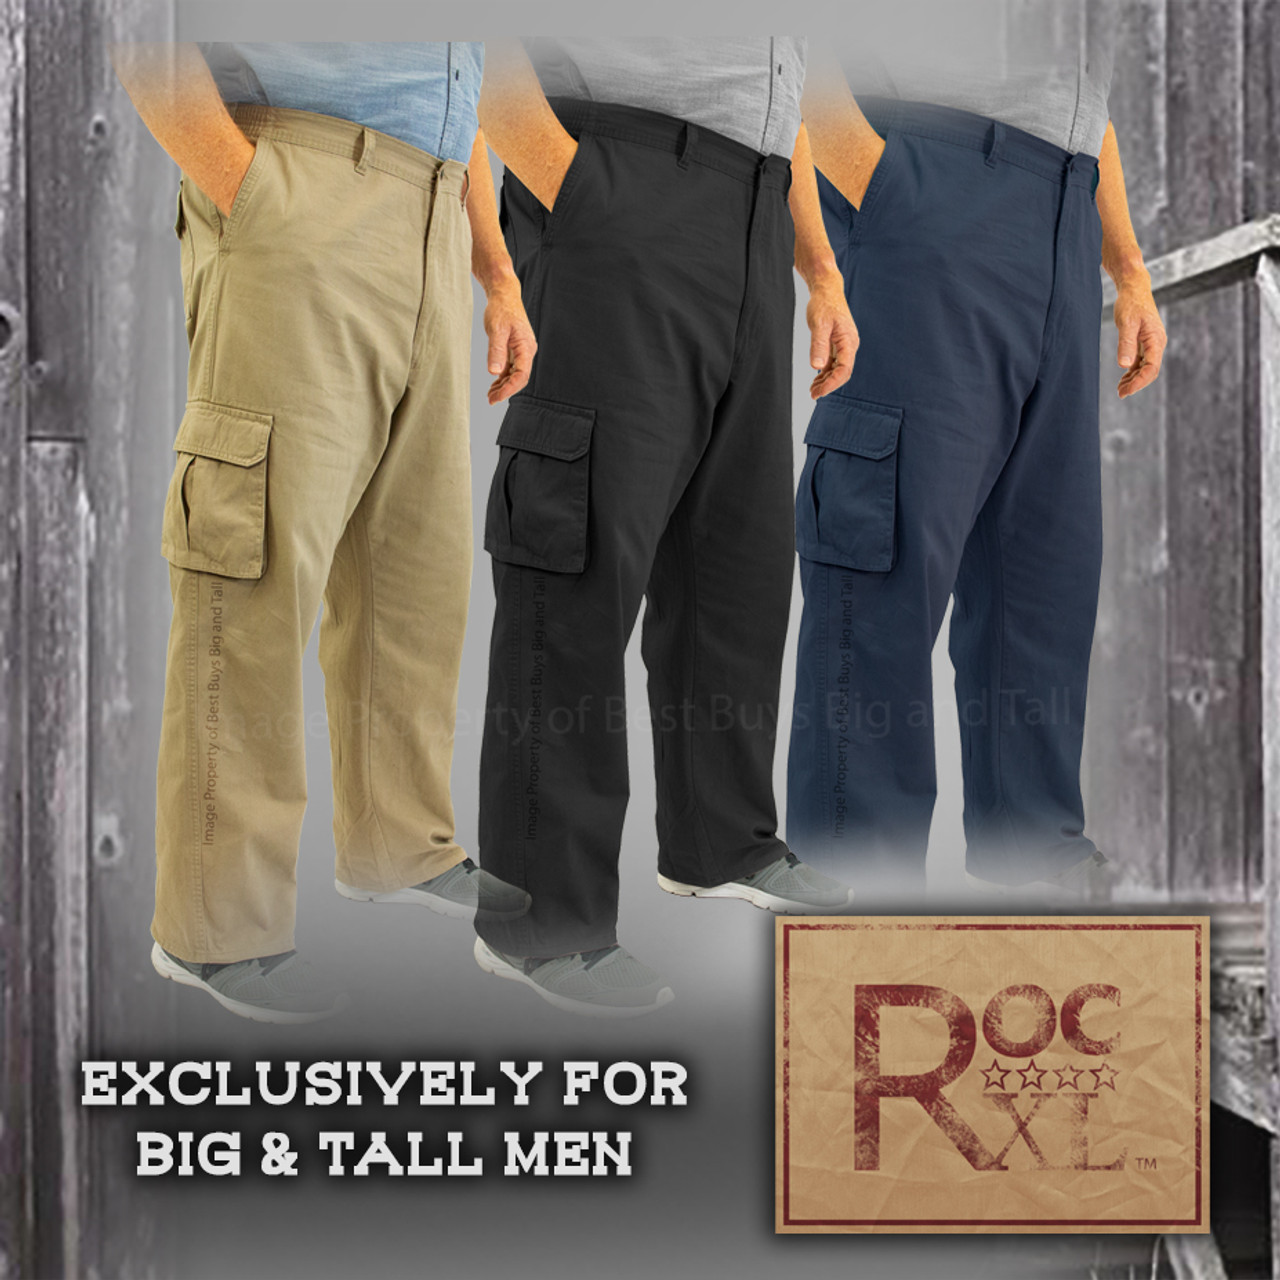 BUY NOW - Big Men's Carpenter Denim Carpenter Jeans ROCXL - Medium